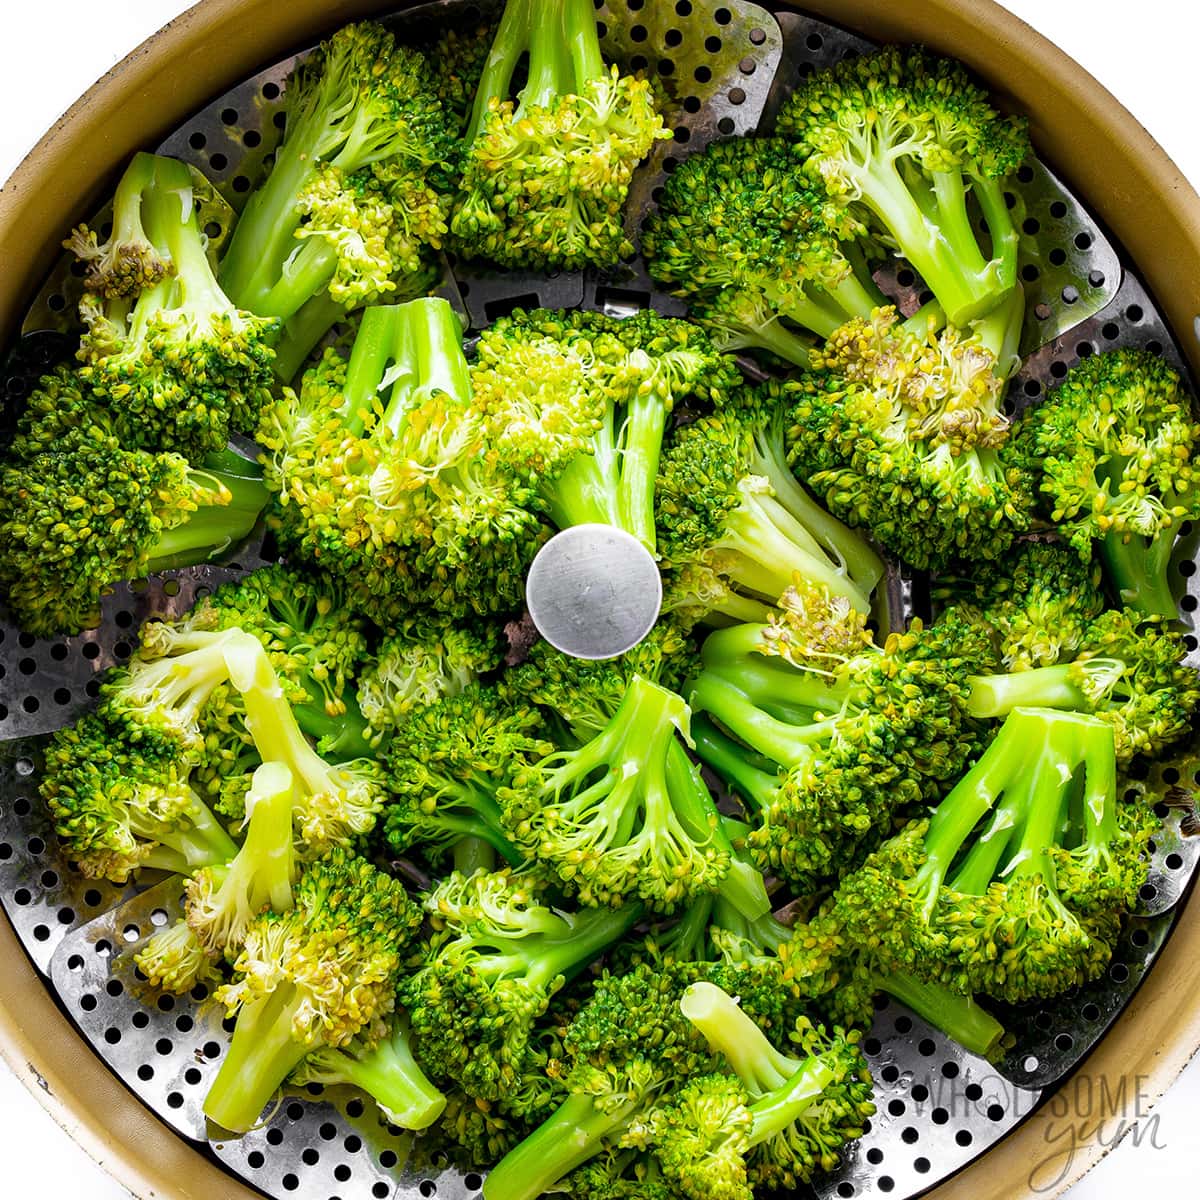 Steam the broccoli in a steamer.